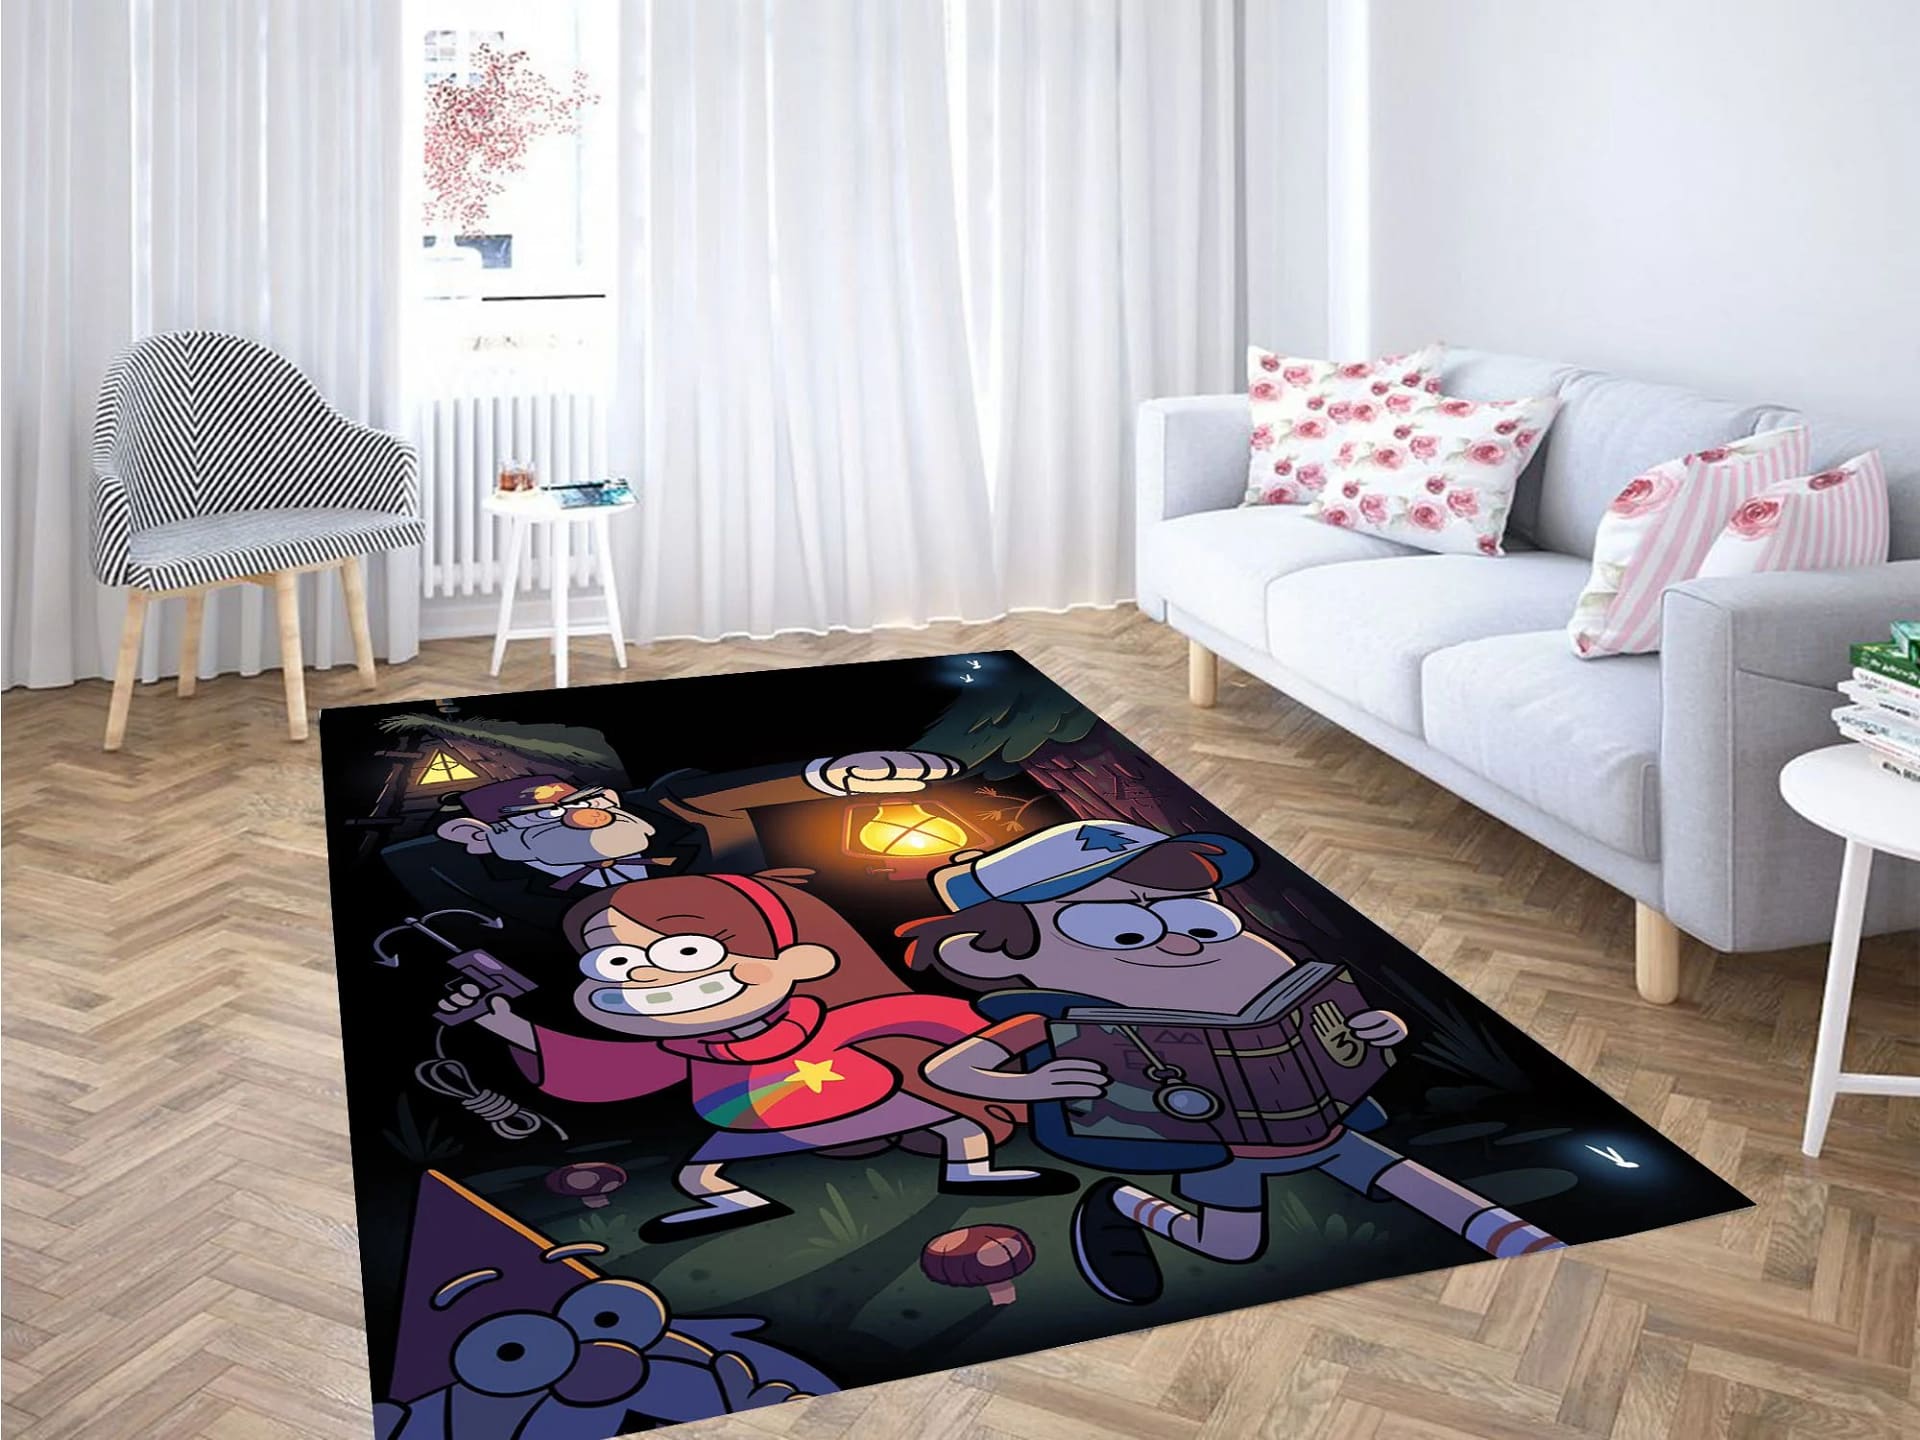 Happy Gravity Falls Carpet Rug